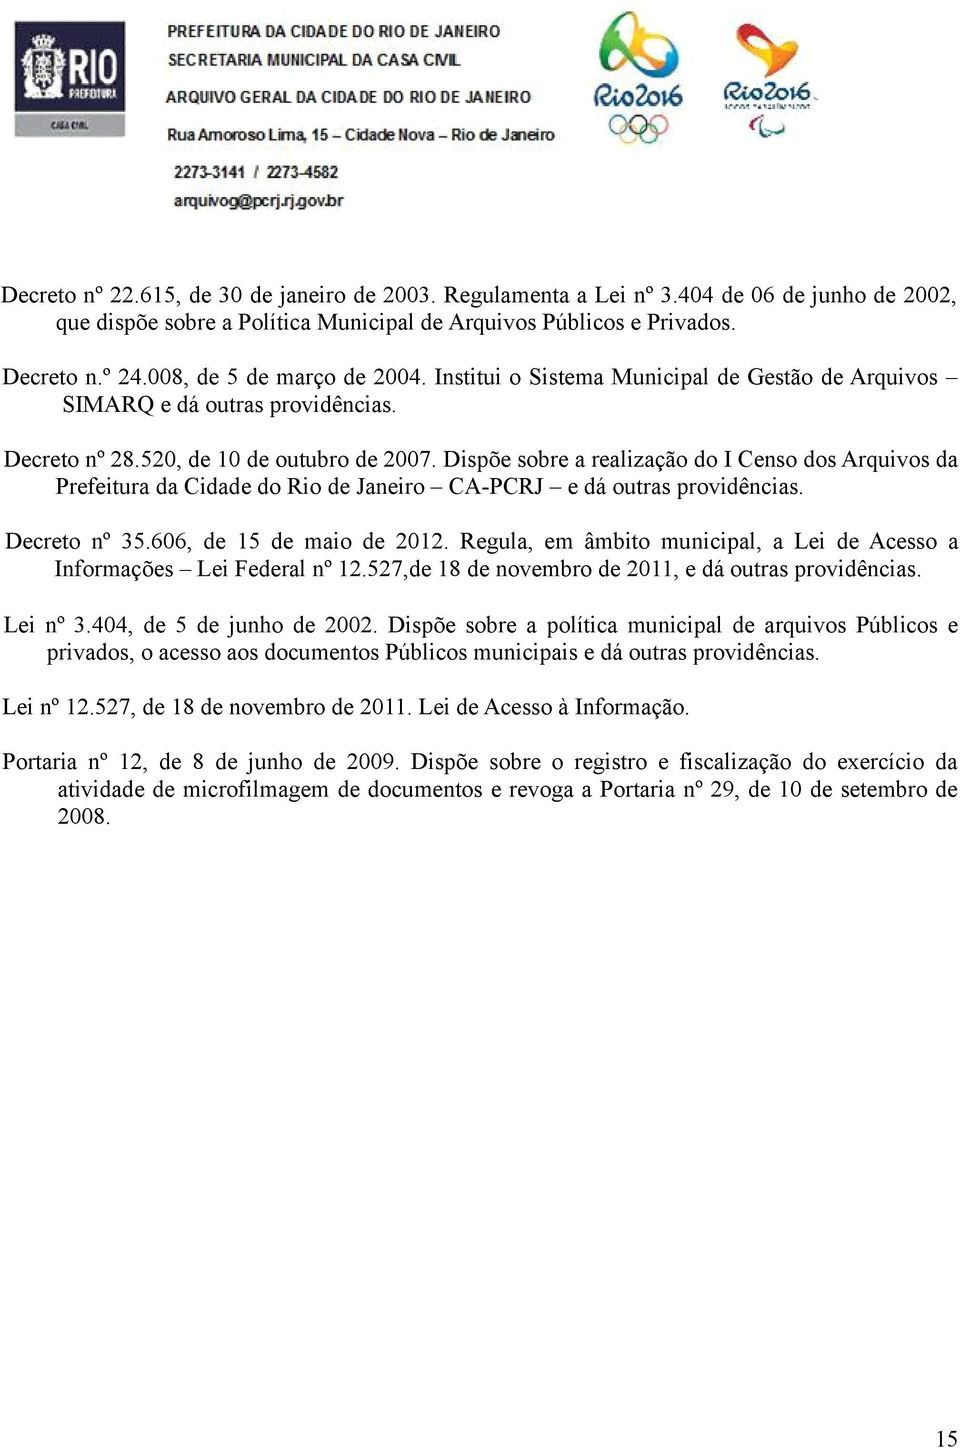 Dispõe sobre a realização do I Censo dos Arquivos da Prefeitura da Cidade do Rio de Janeiro CA-PCRJ e dá outras providências. Decreto nº 35.606, de 15 de maio de 2012.